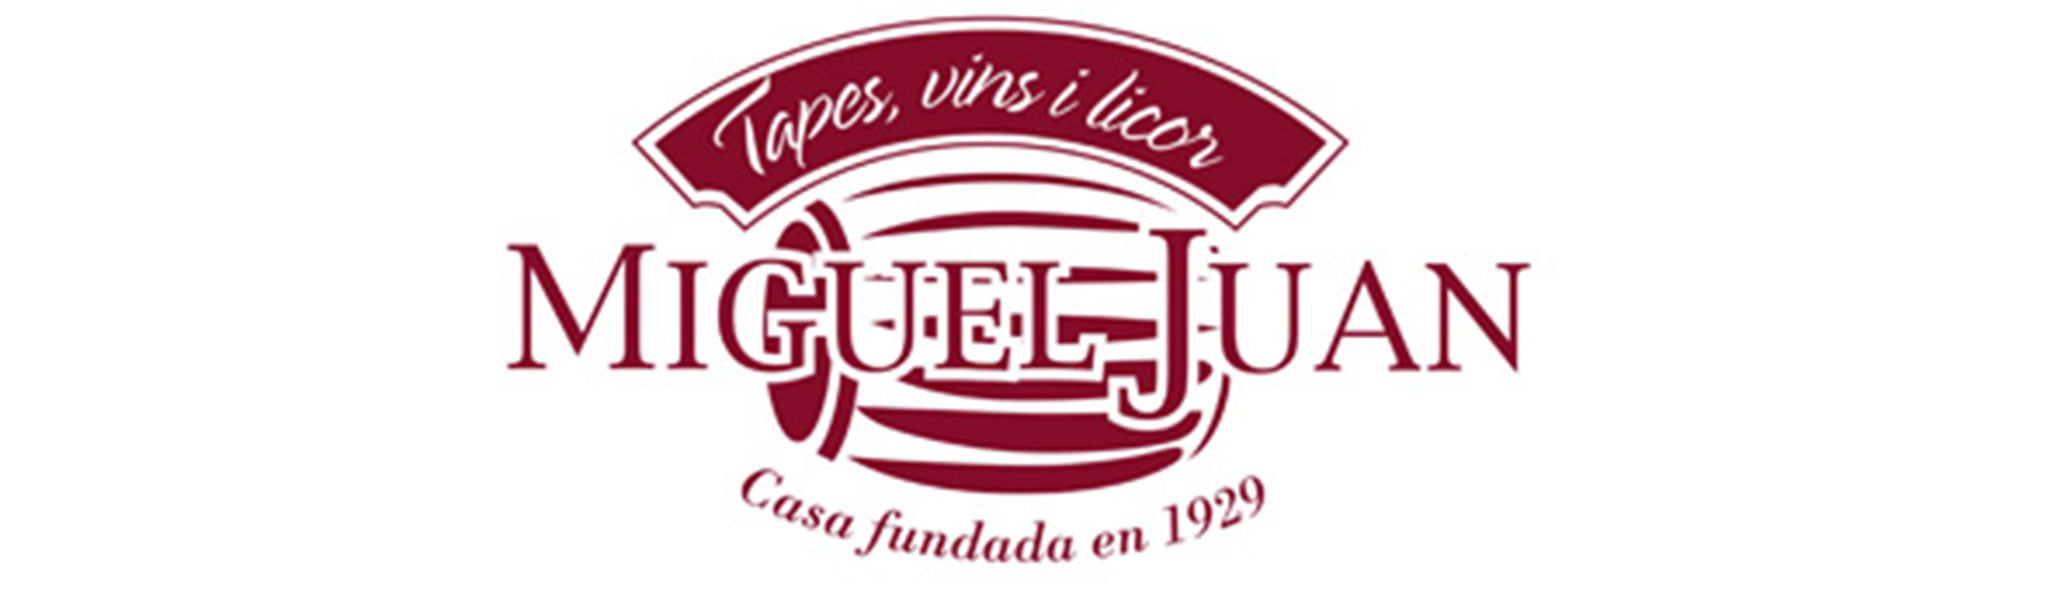 Logotipo Casa Miguel Juan